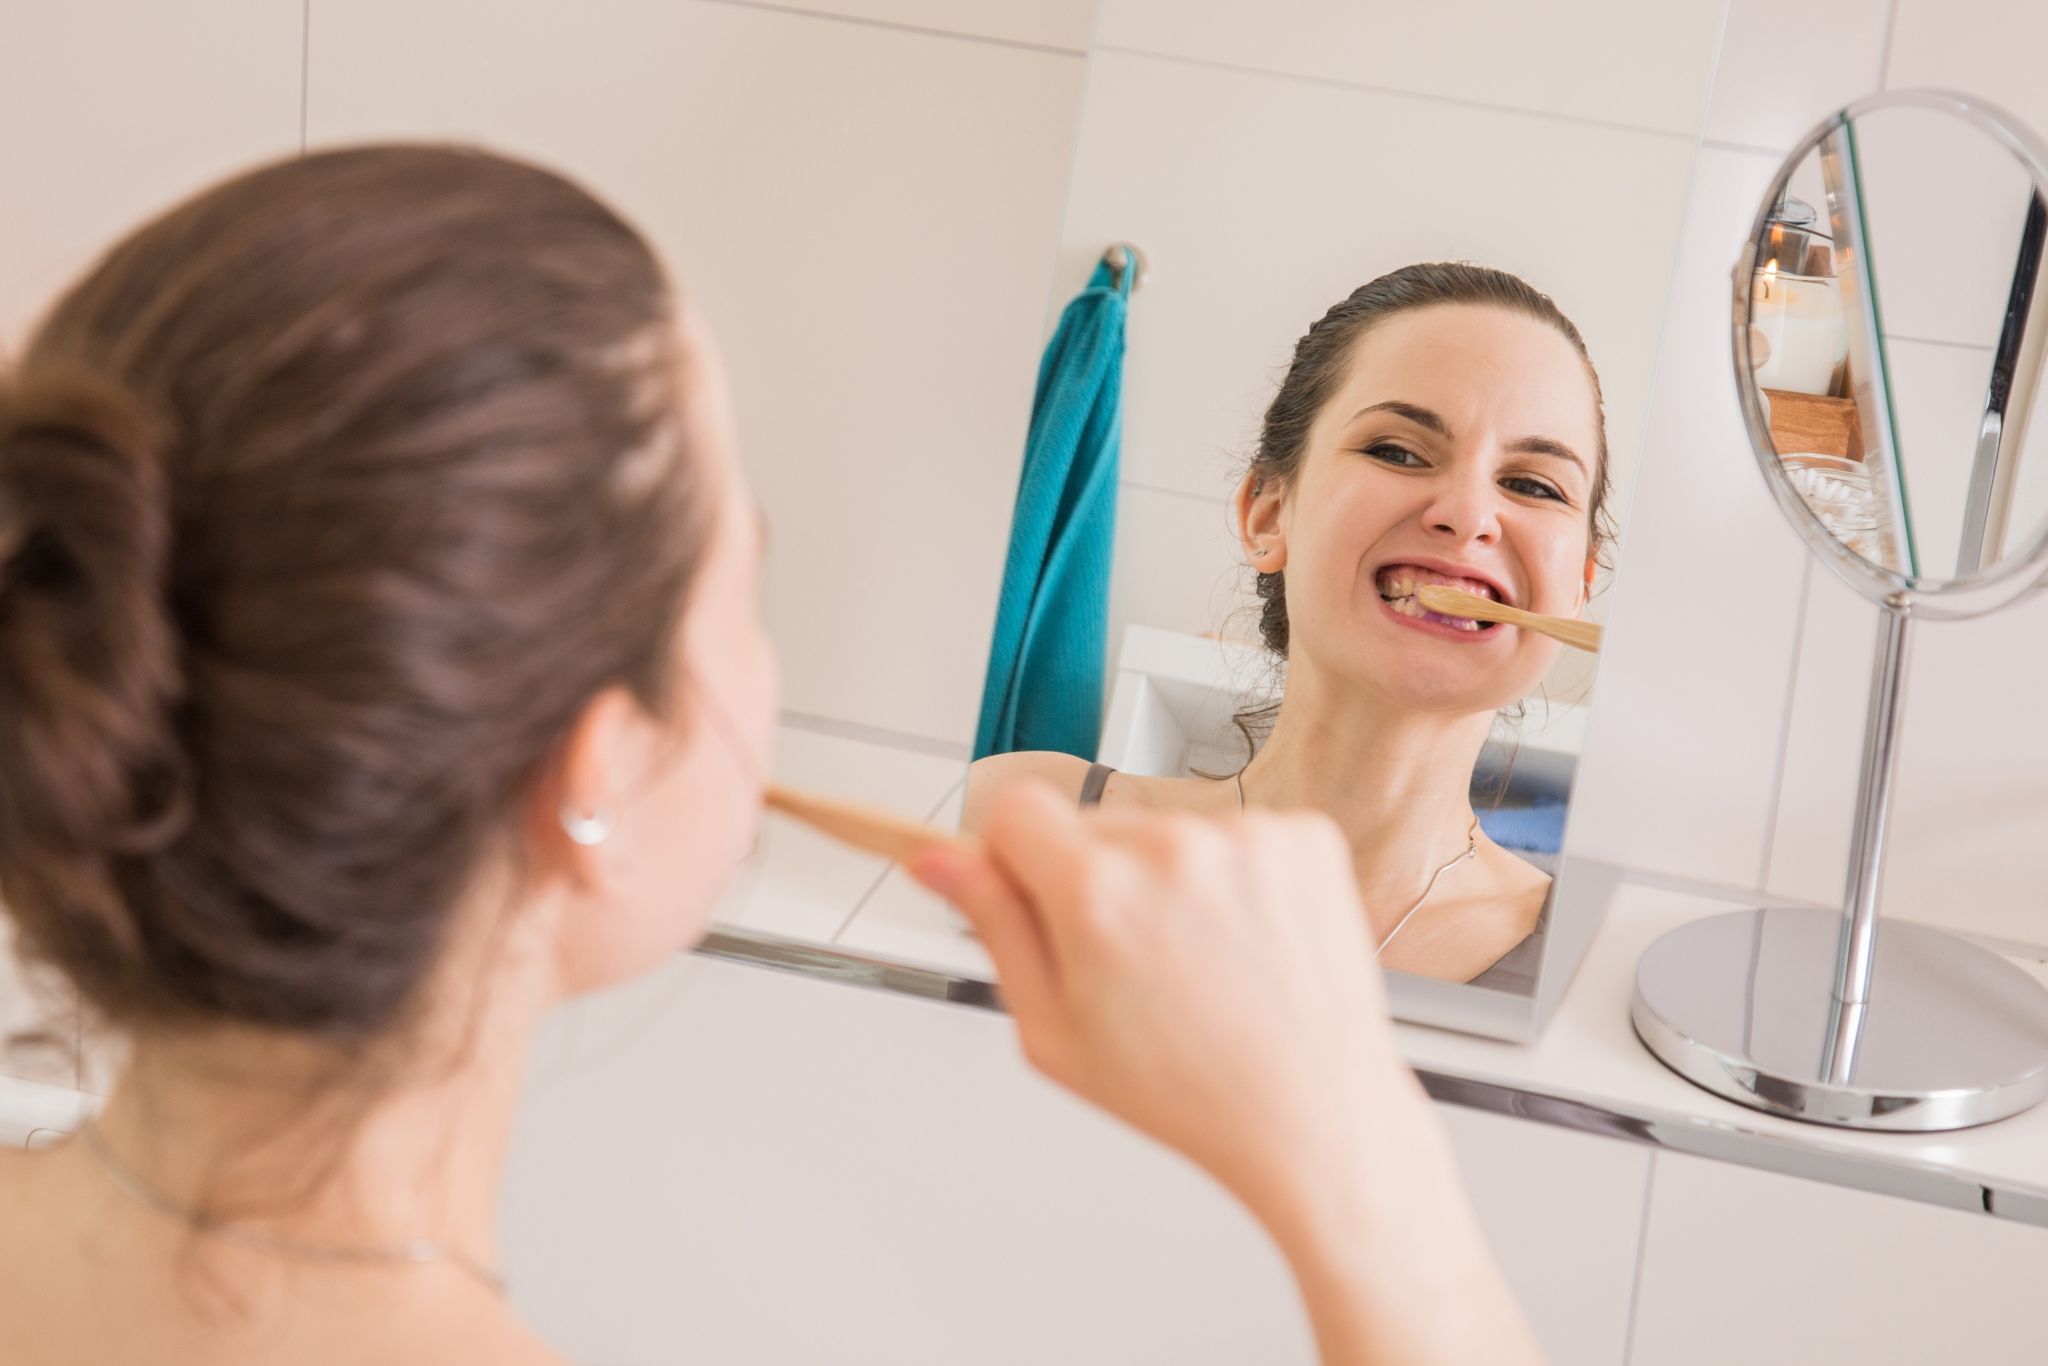 Ordentlich Putzen lautet die Devise: Durch regelmäßige Mundhygiene beugt man übelriechenden Atem vor.